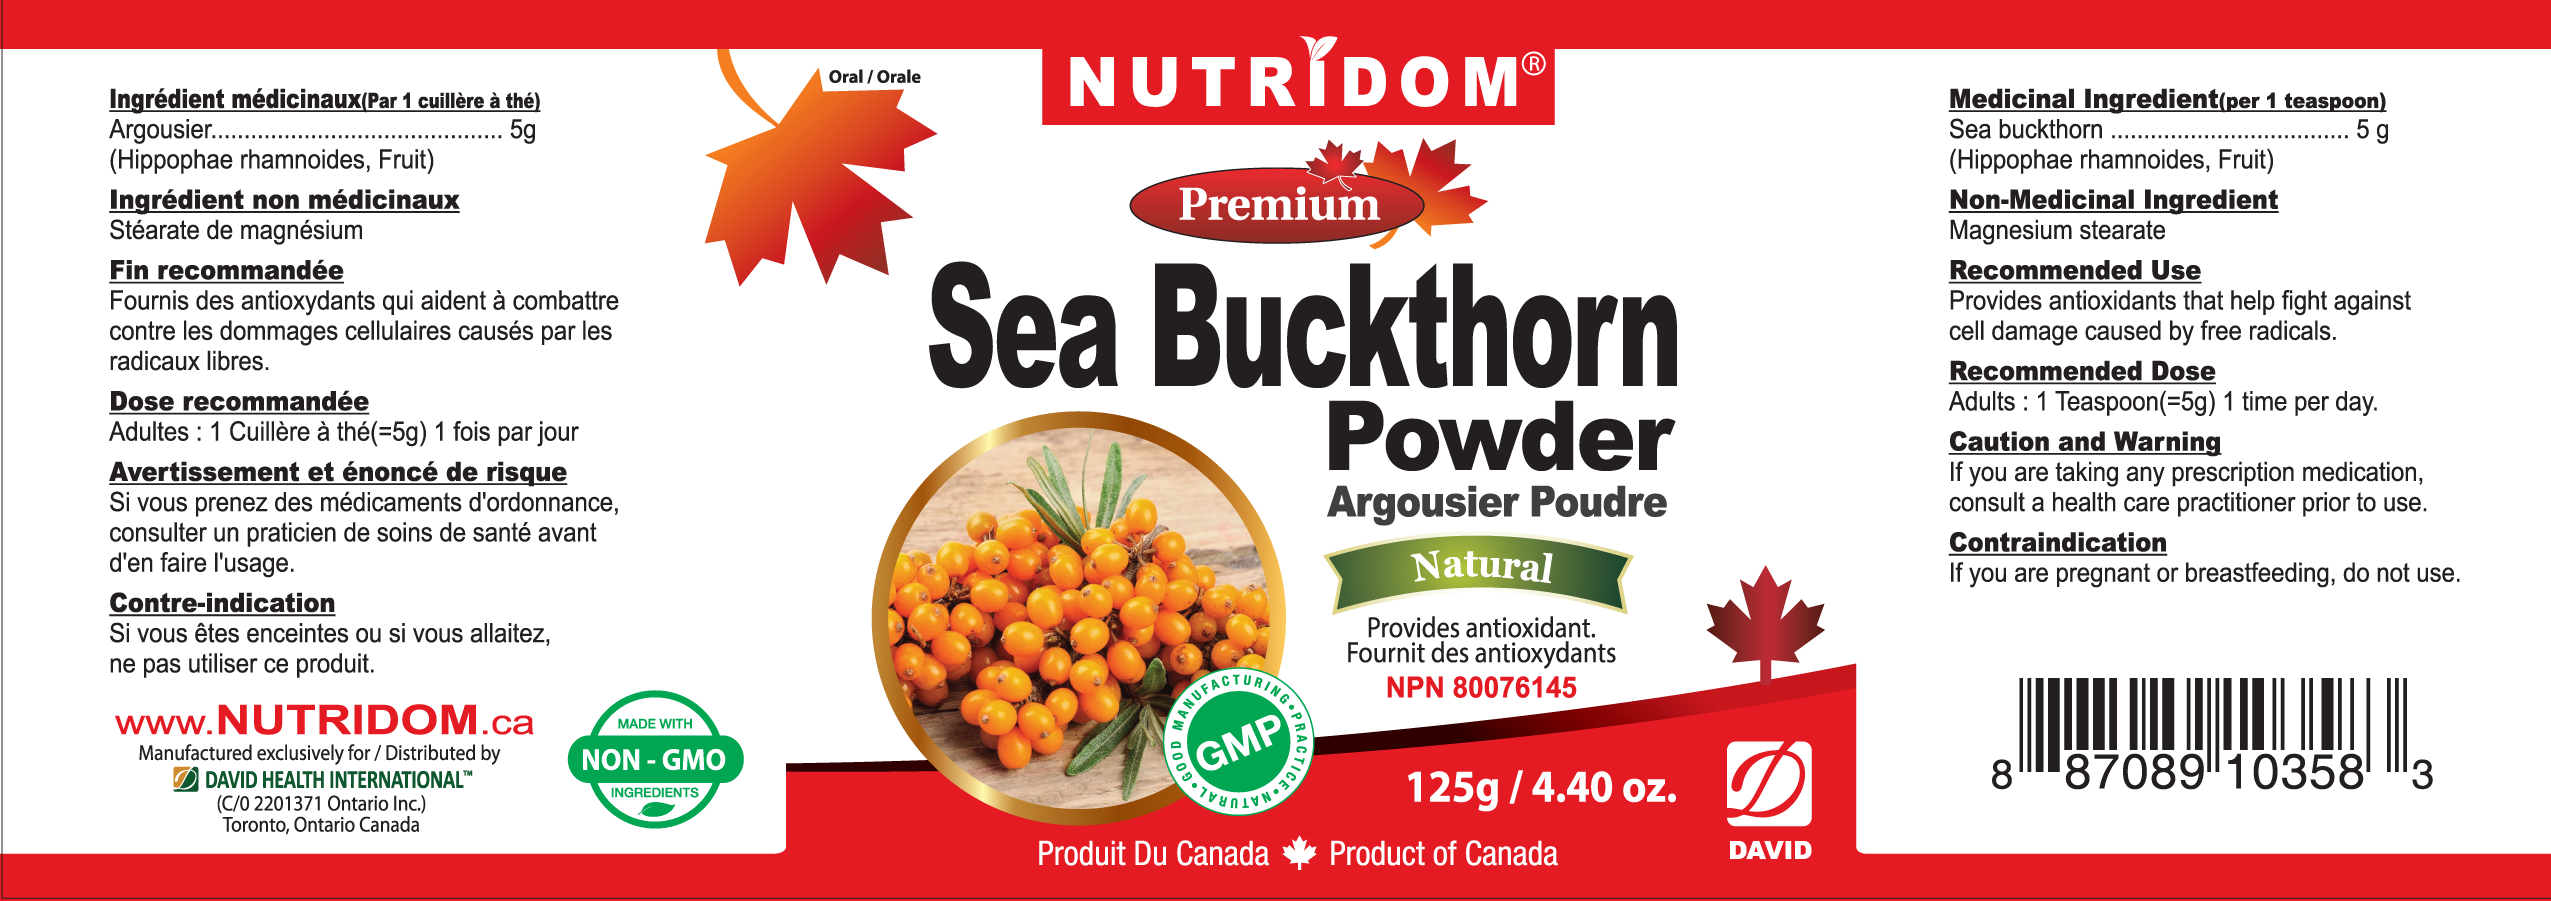 NUTRIDOM Sea Buckthorn Powder 124g